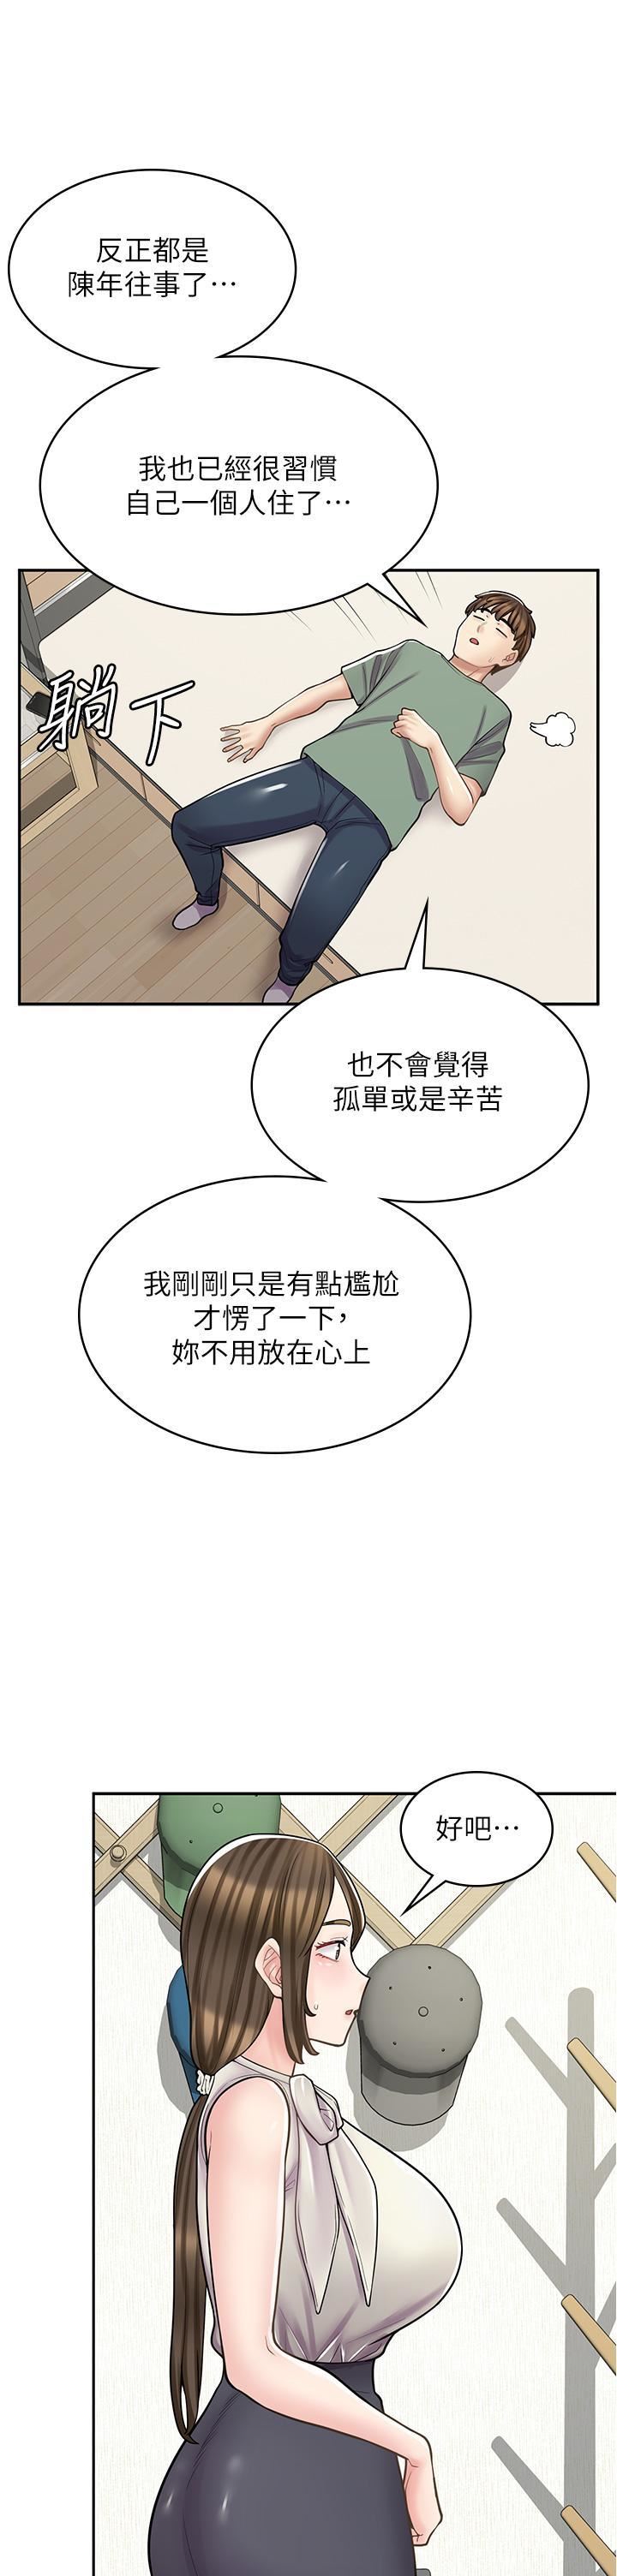 漫畫店工讀生-第34章-图片7